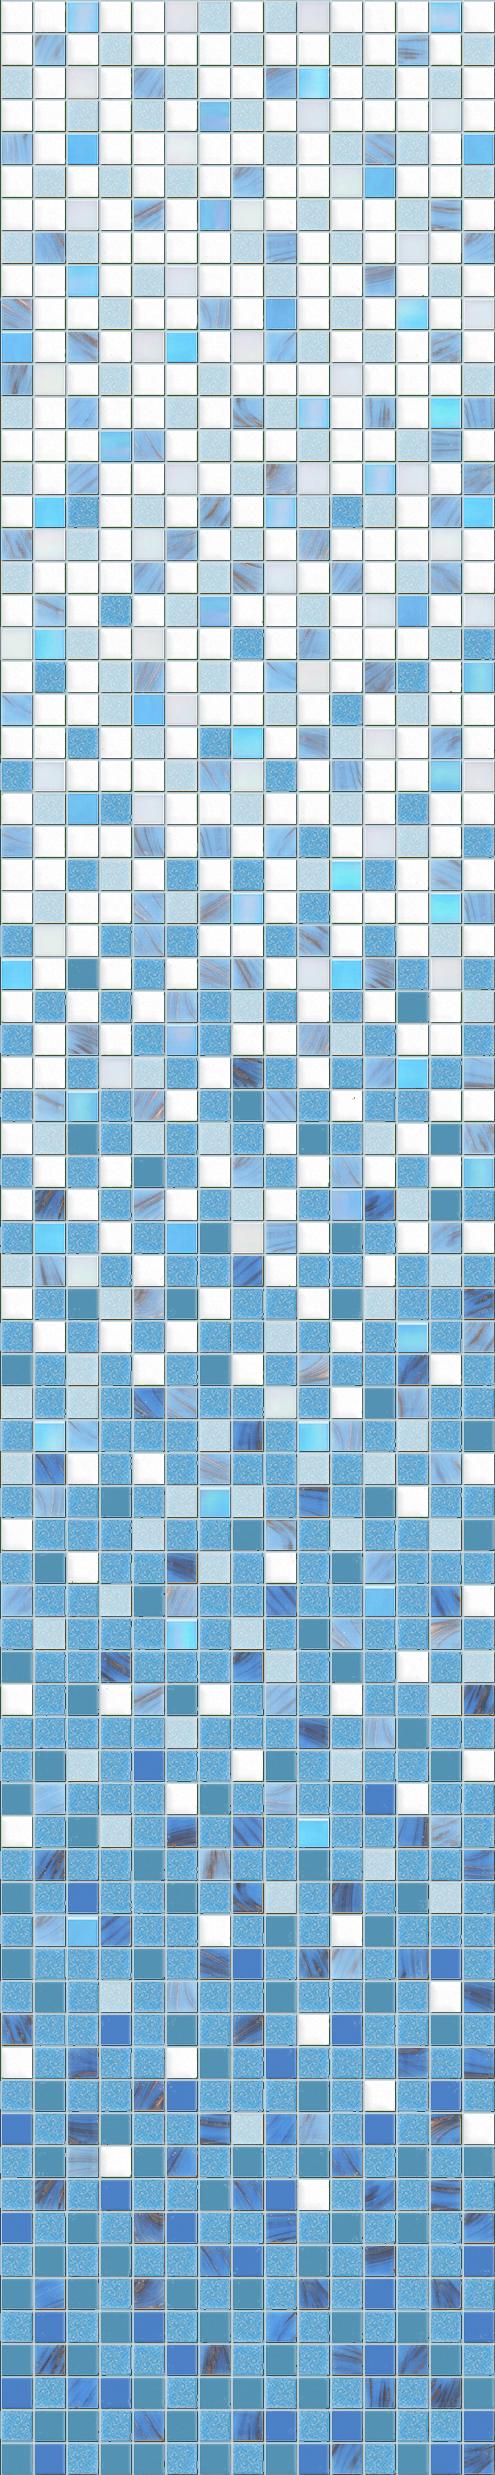 Стеклянная мозаика плитка D-CORE растяжка 1635х327 мм (RI-02)